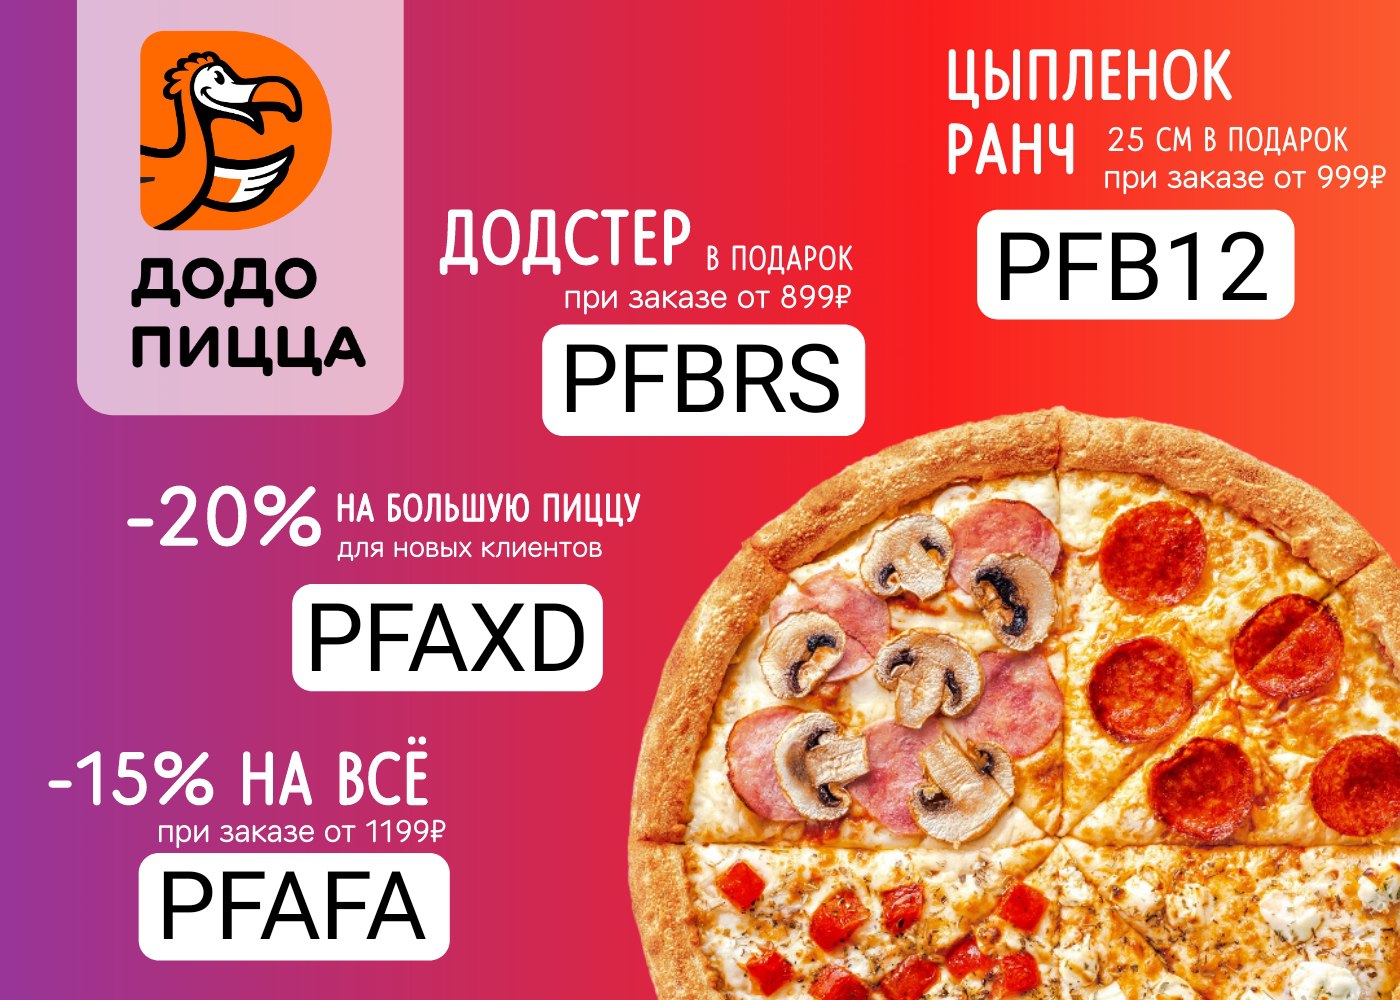 лучшая пицца доставка в москве рейтинг фото 118